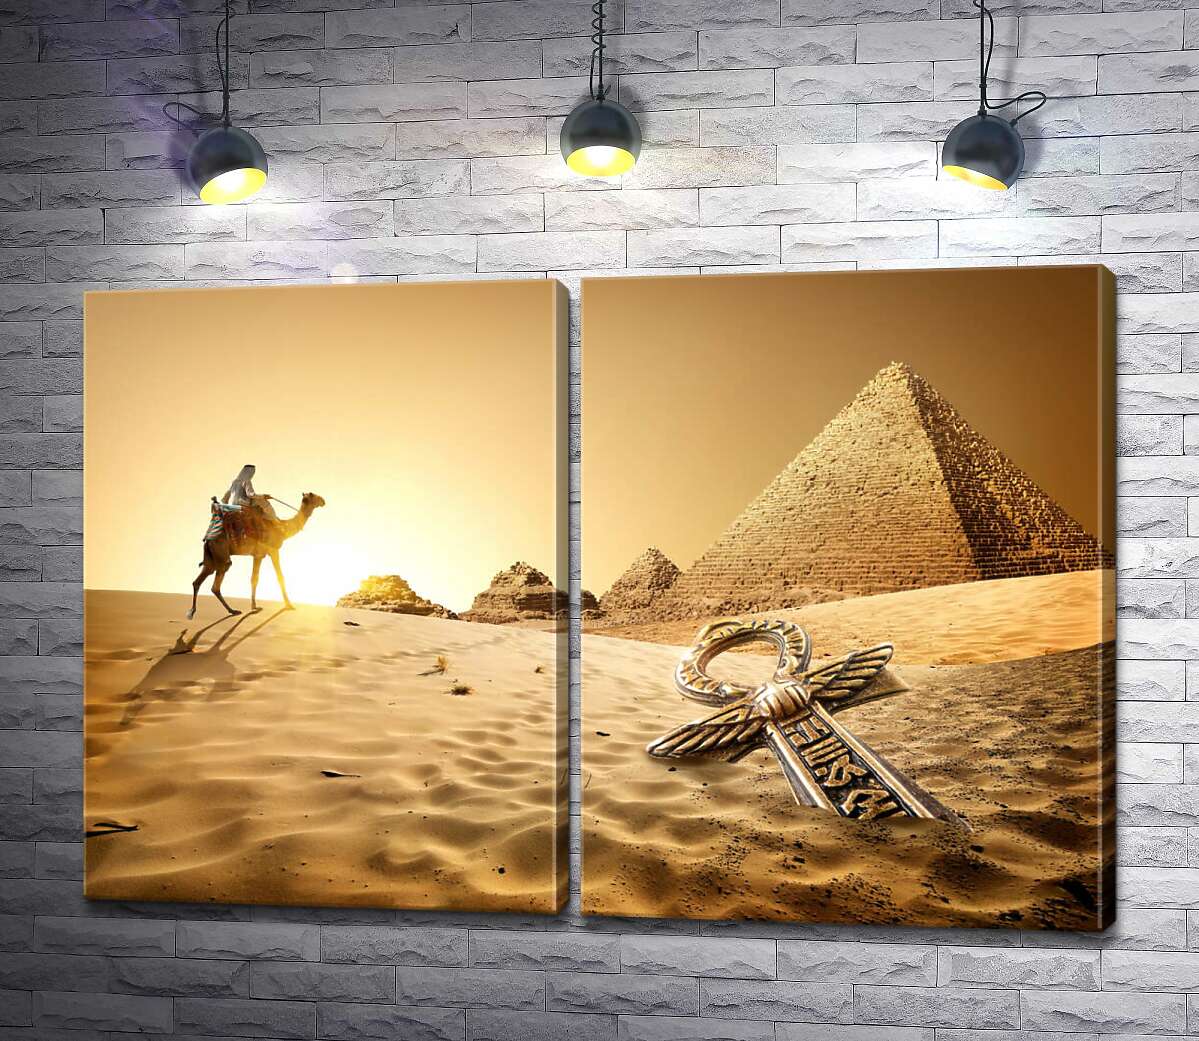 модульная картина Символ жизни - анх в песках пустыни на фоне египетских пирамид